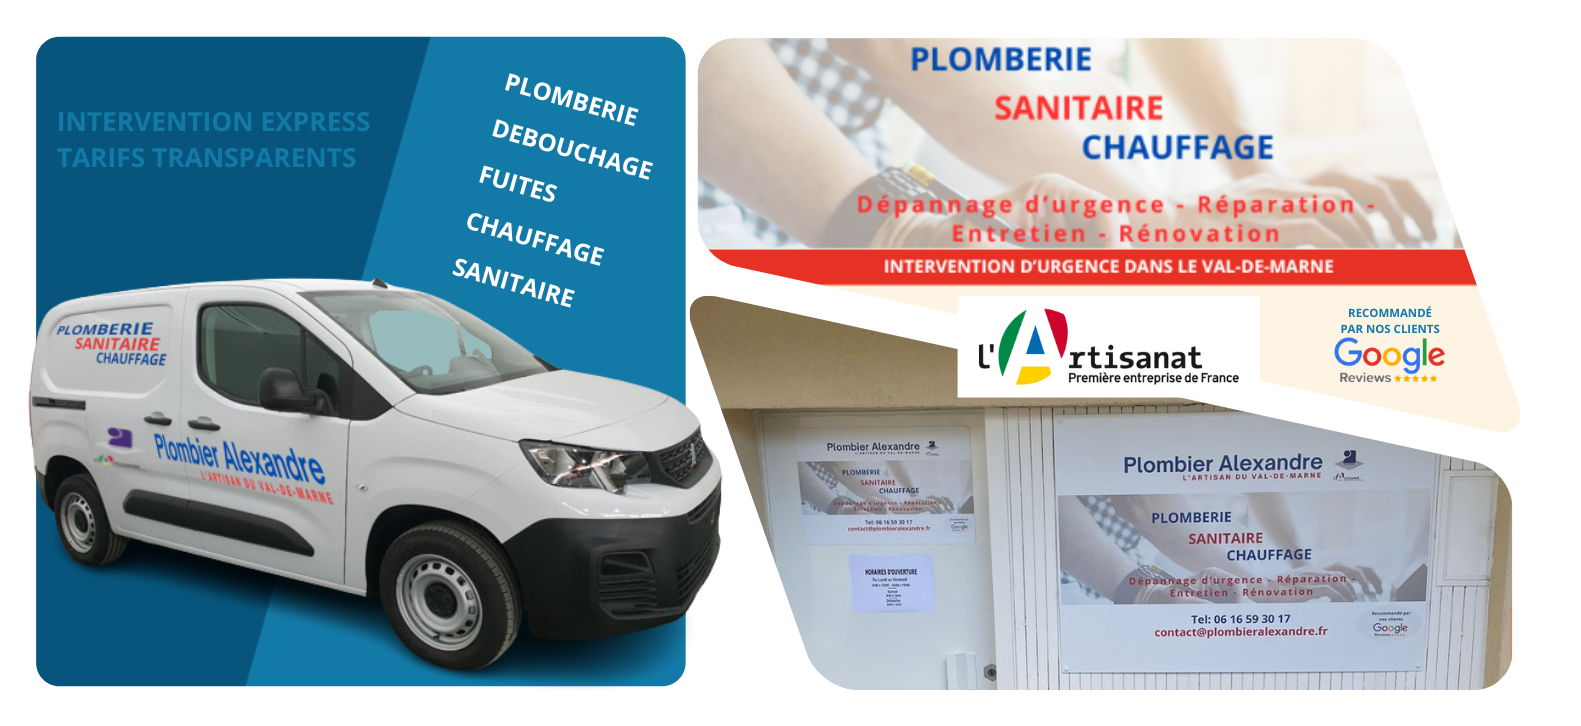 Plombier à Boissy-Saint-Léger - Plomberie Alexandre, spécialiste en dépannage, réparation, entretien et rénovation